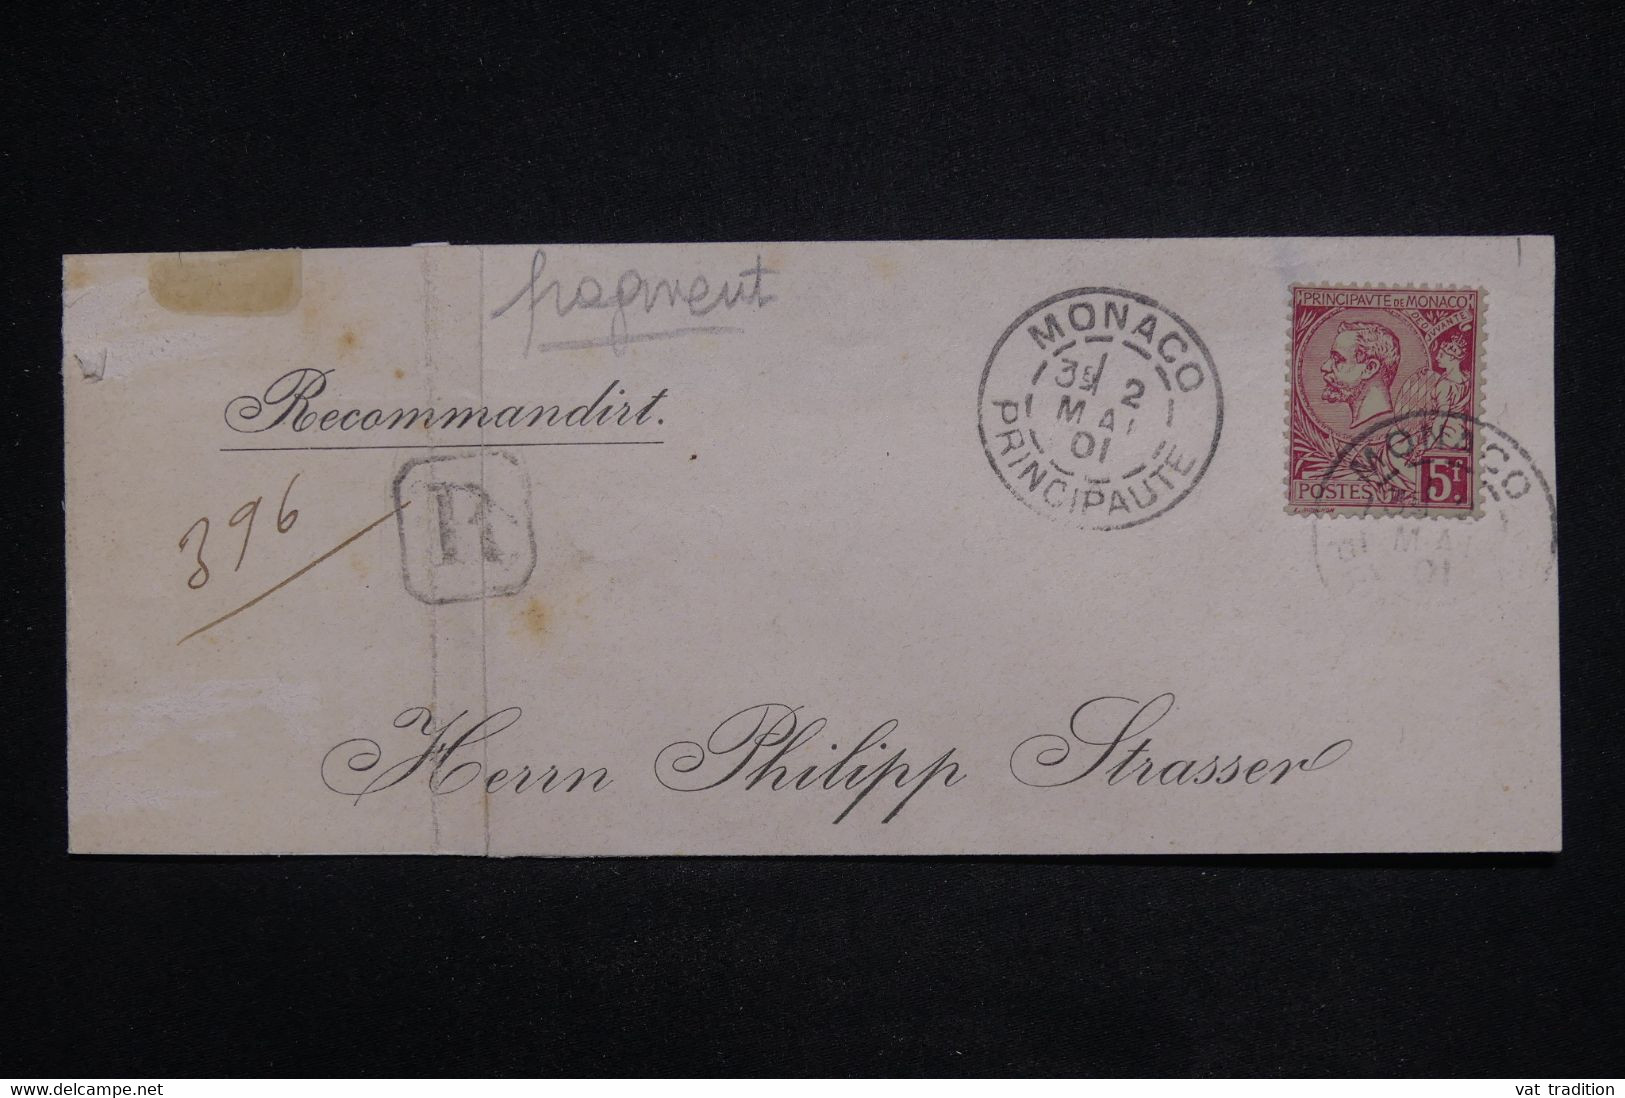 MONACO - Fragment D'enveloppe En Recommandé Pour L 'Allemagne En 1901 - L 126600 - Lettres & Documents